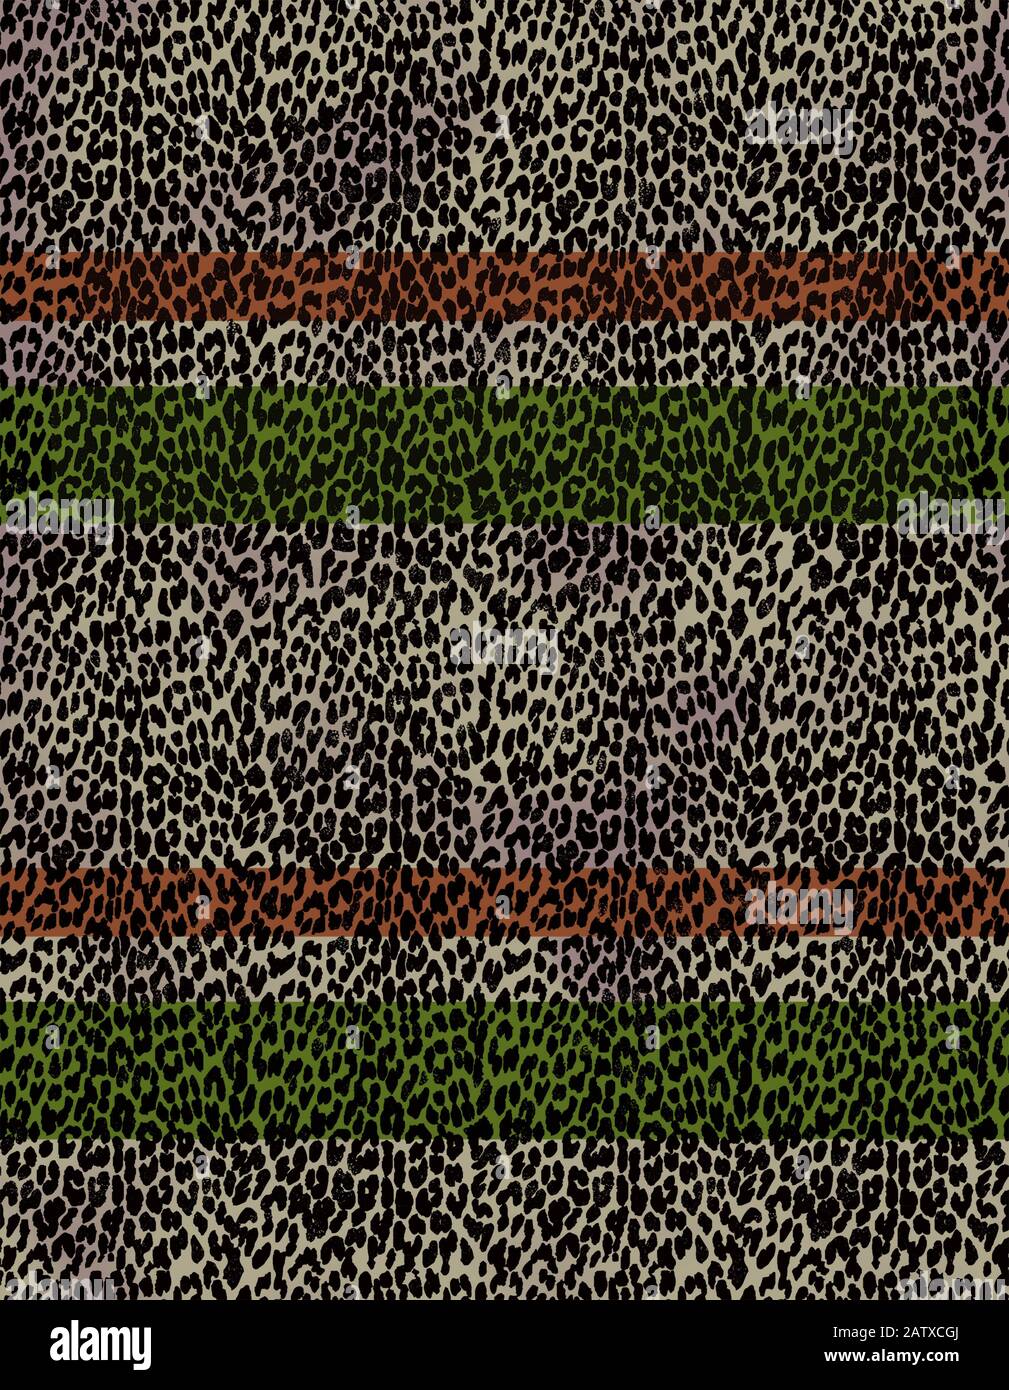 Nahtlose Hauttextur mit farbigen Linien. Leopardenmuster in schwarzer Farbe. - Abbildung Stockfoto